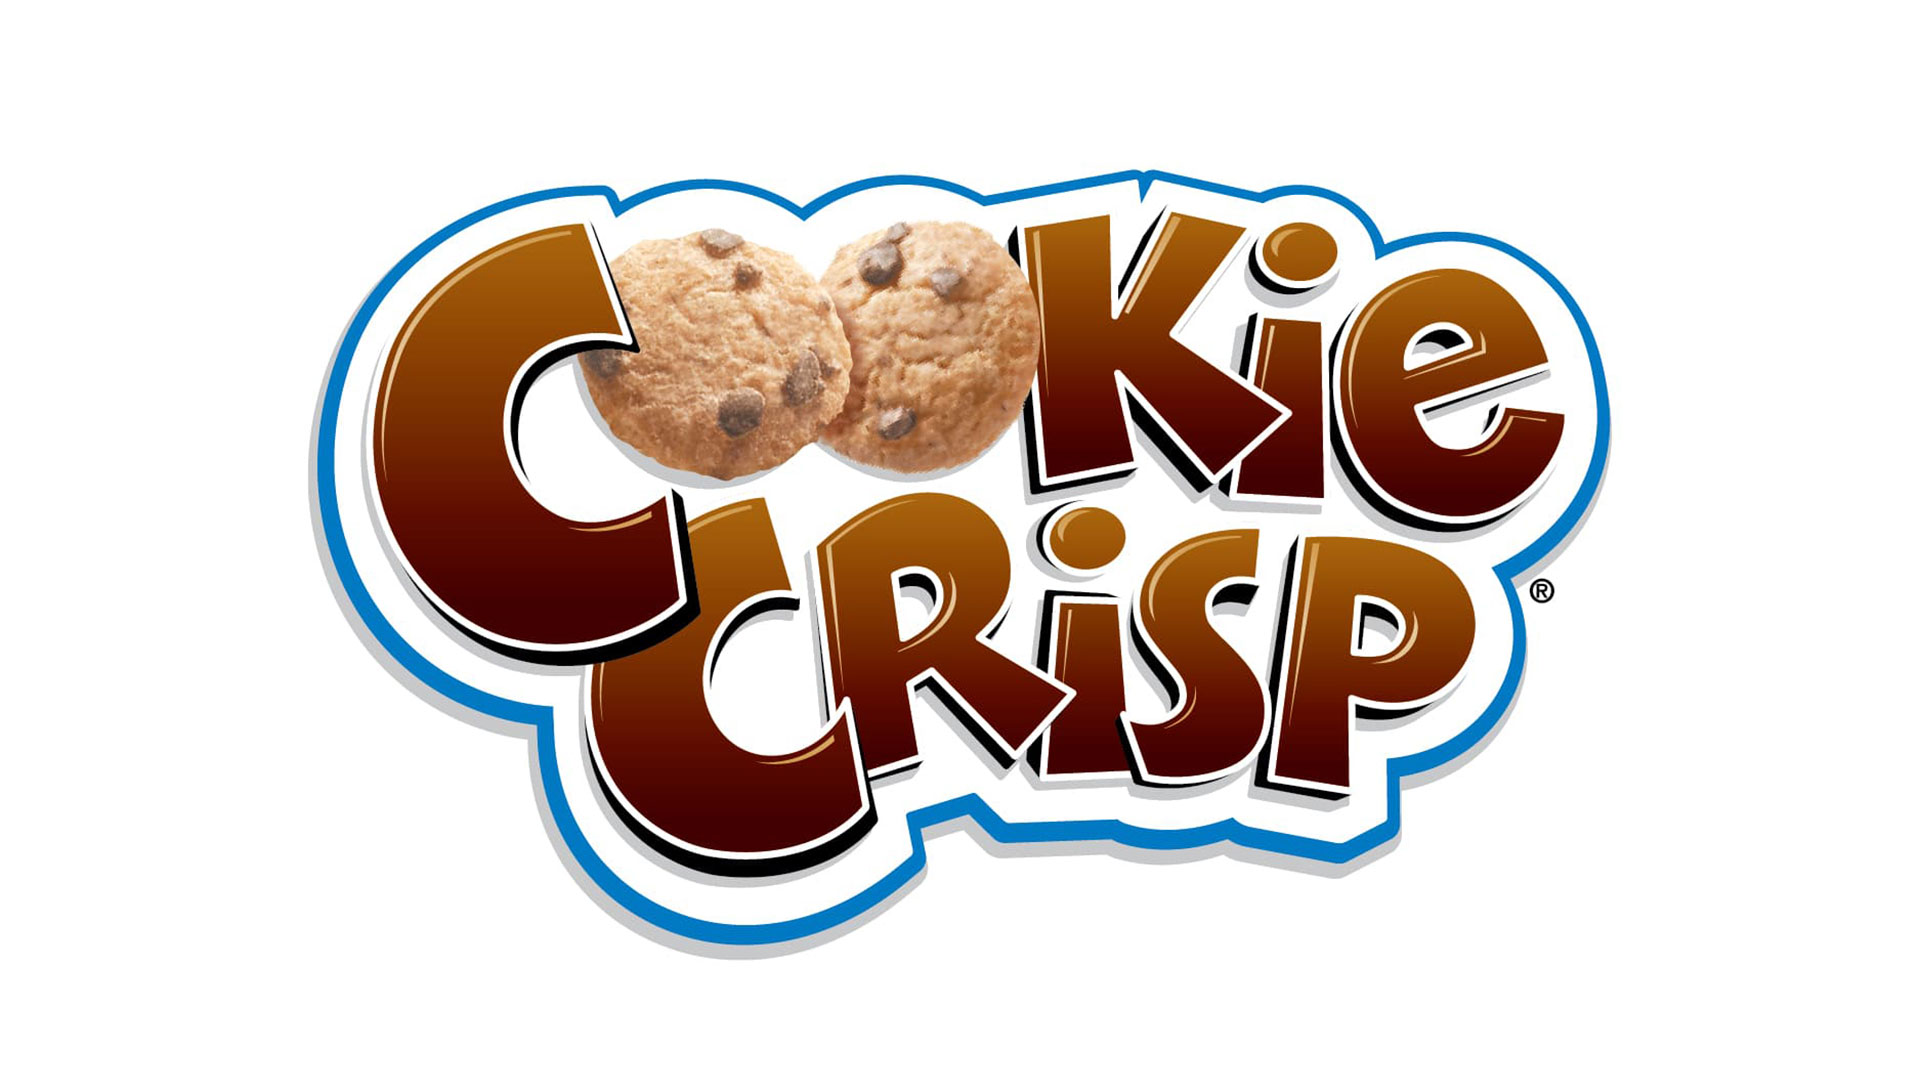 03-CookieCrisp.jpg